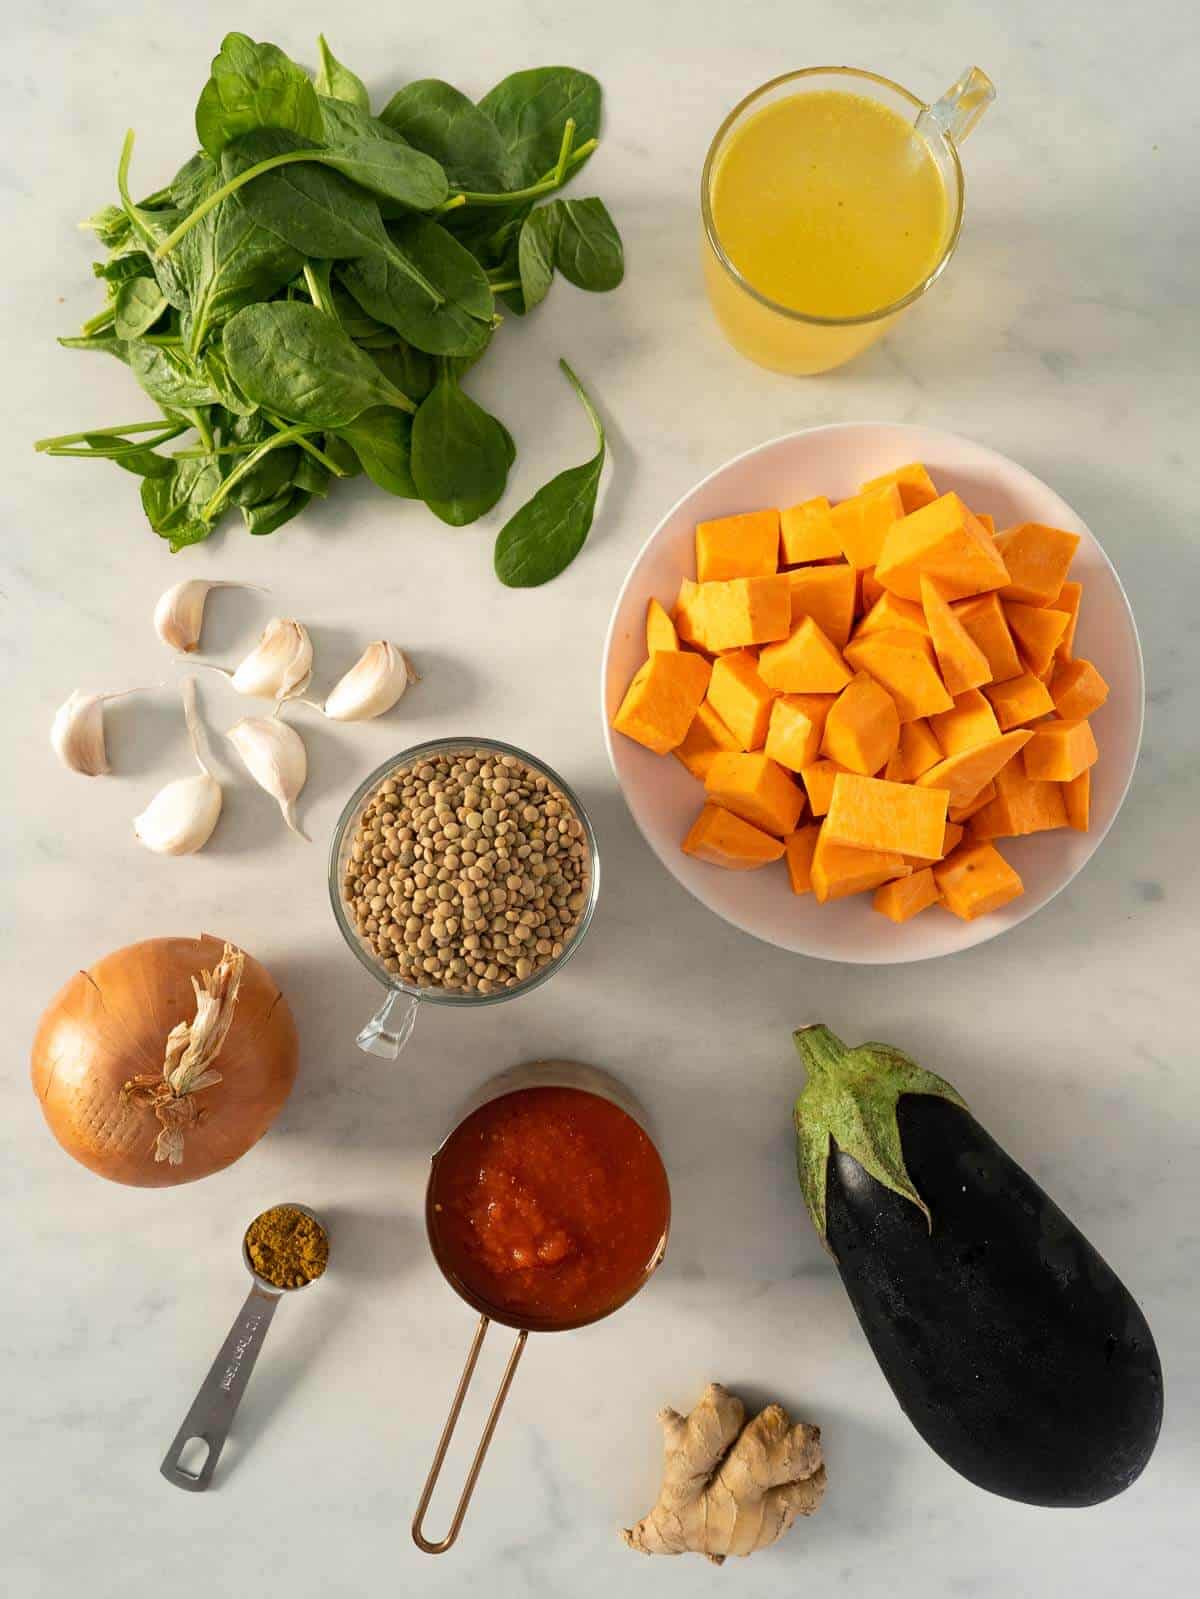 ingredientes para hacer un guiso de lentejas al curry.